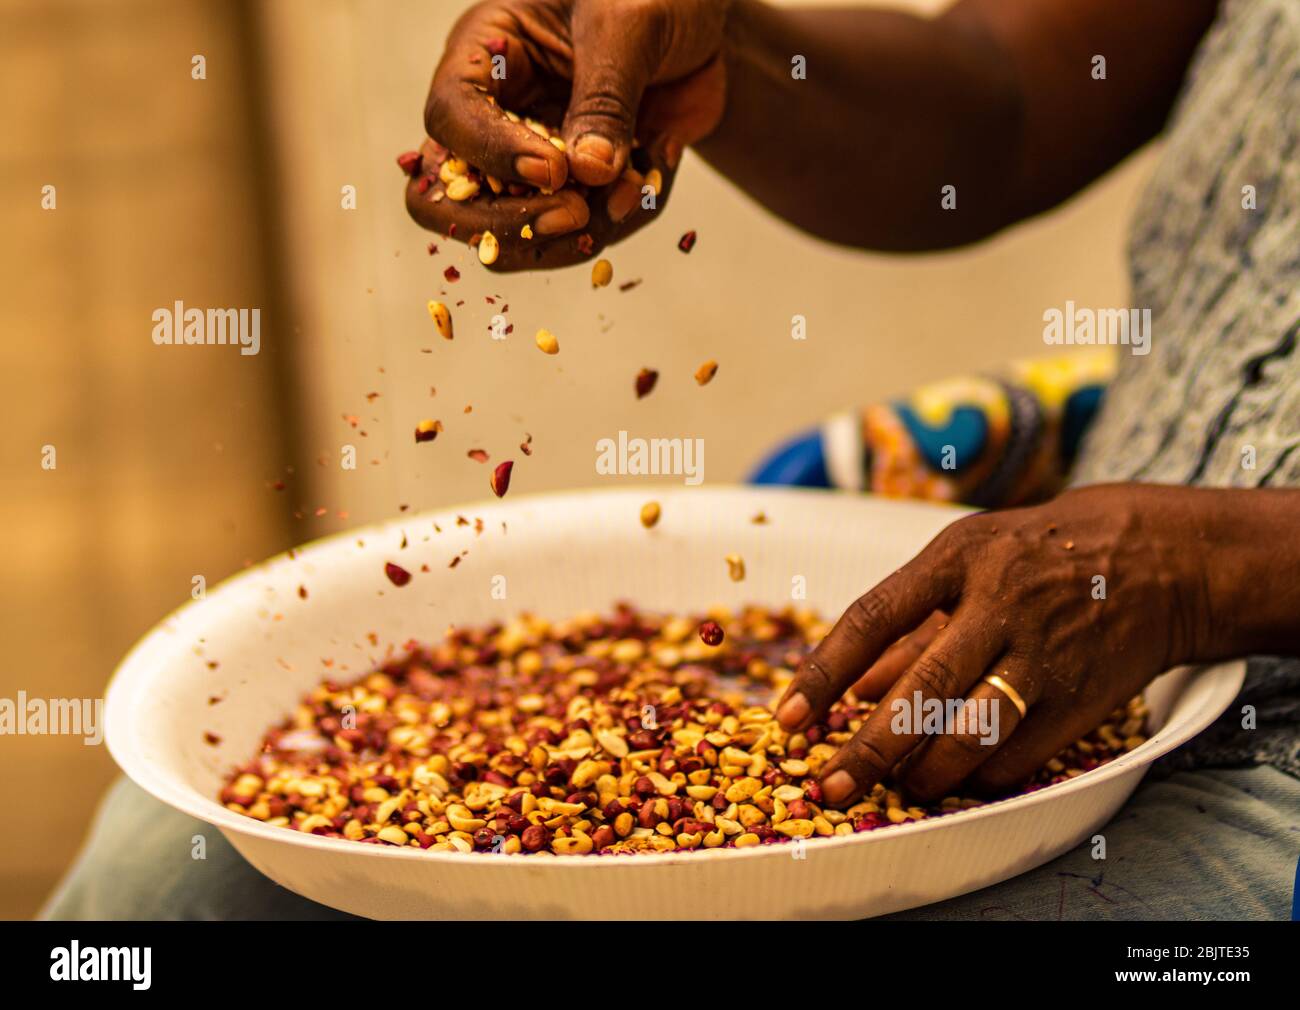 Processo de escolha dos grão de amendoim (Ginguba) para a manufaturação de manteiga de Amendoim. Manufacturing Peanut Butter. Lobito, Benguela-Angola Stock Photo